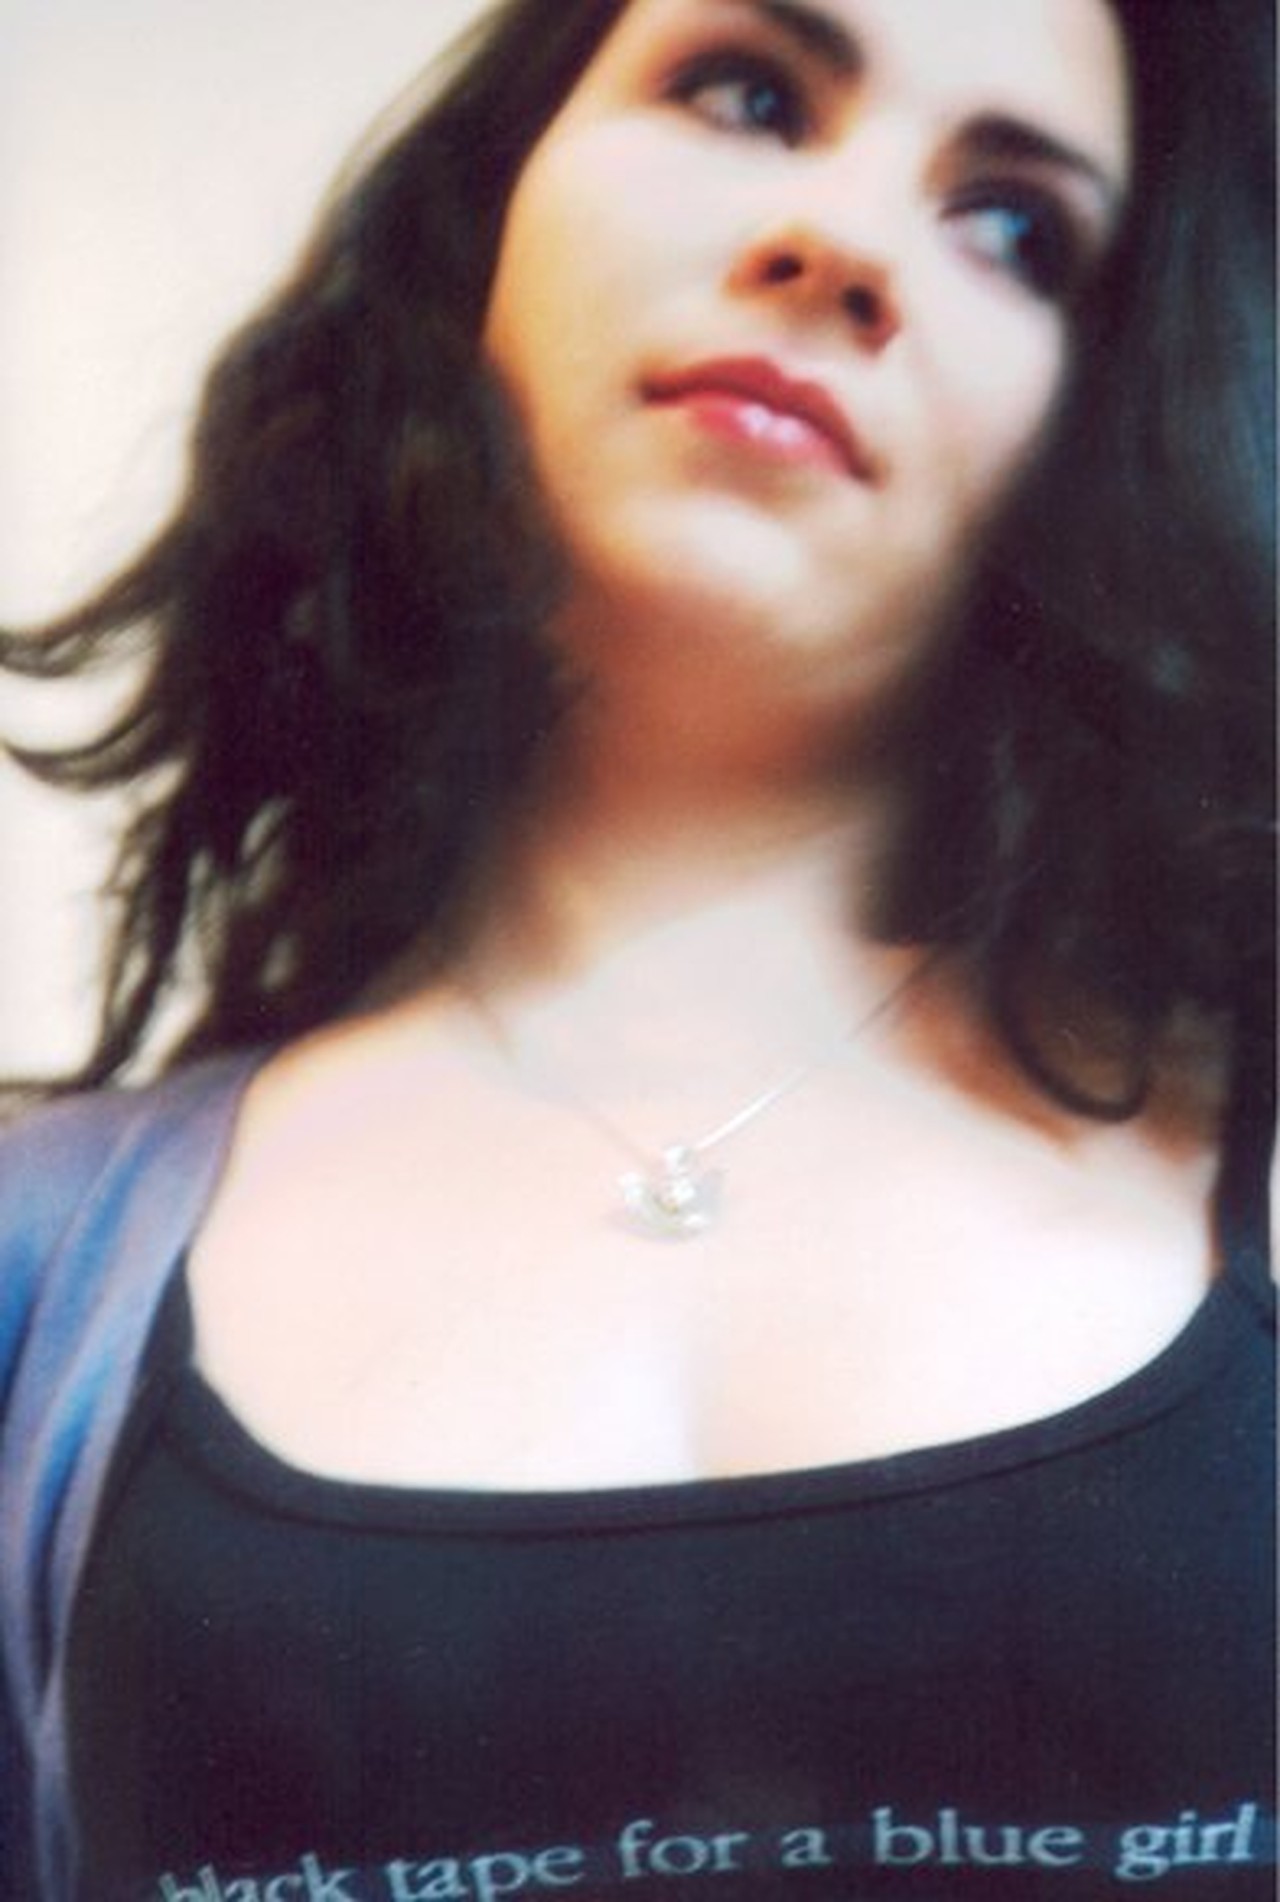 sobonatovada's profile picture